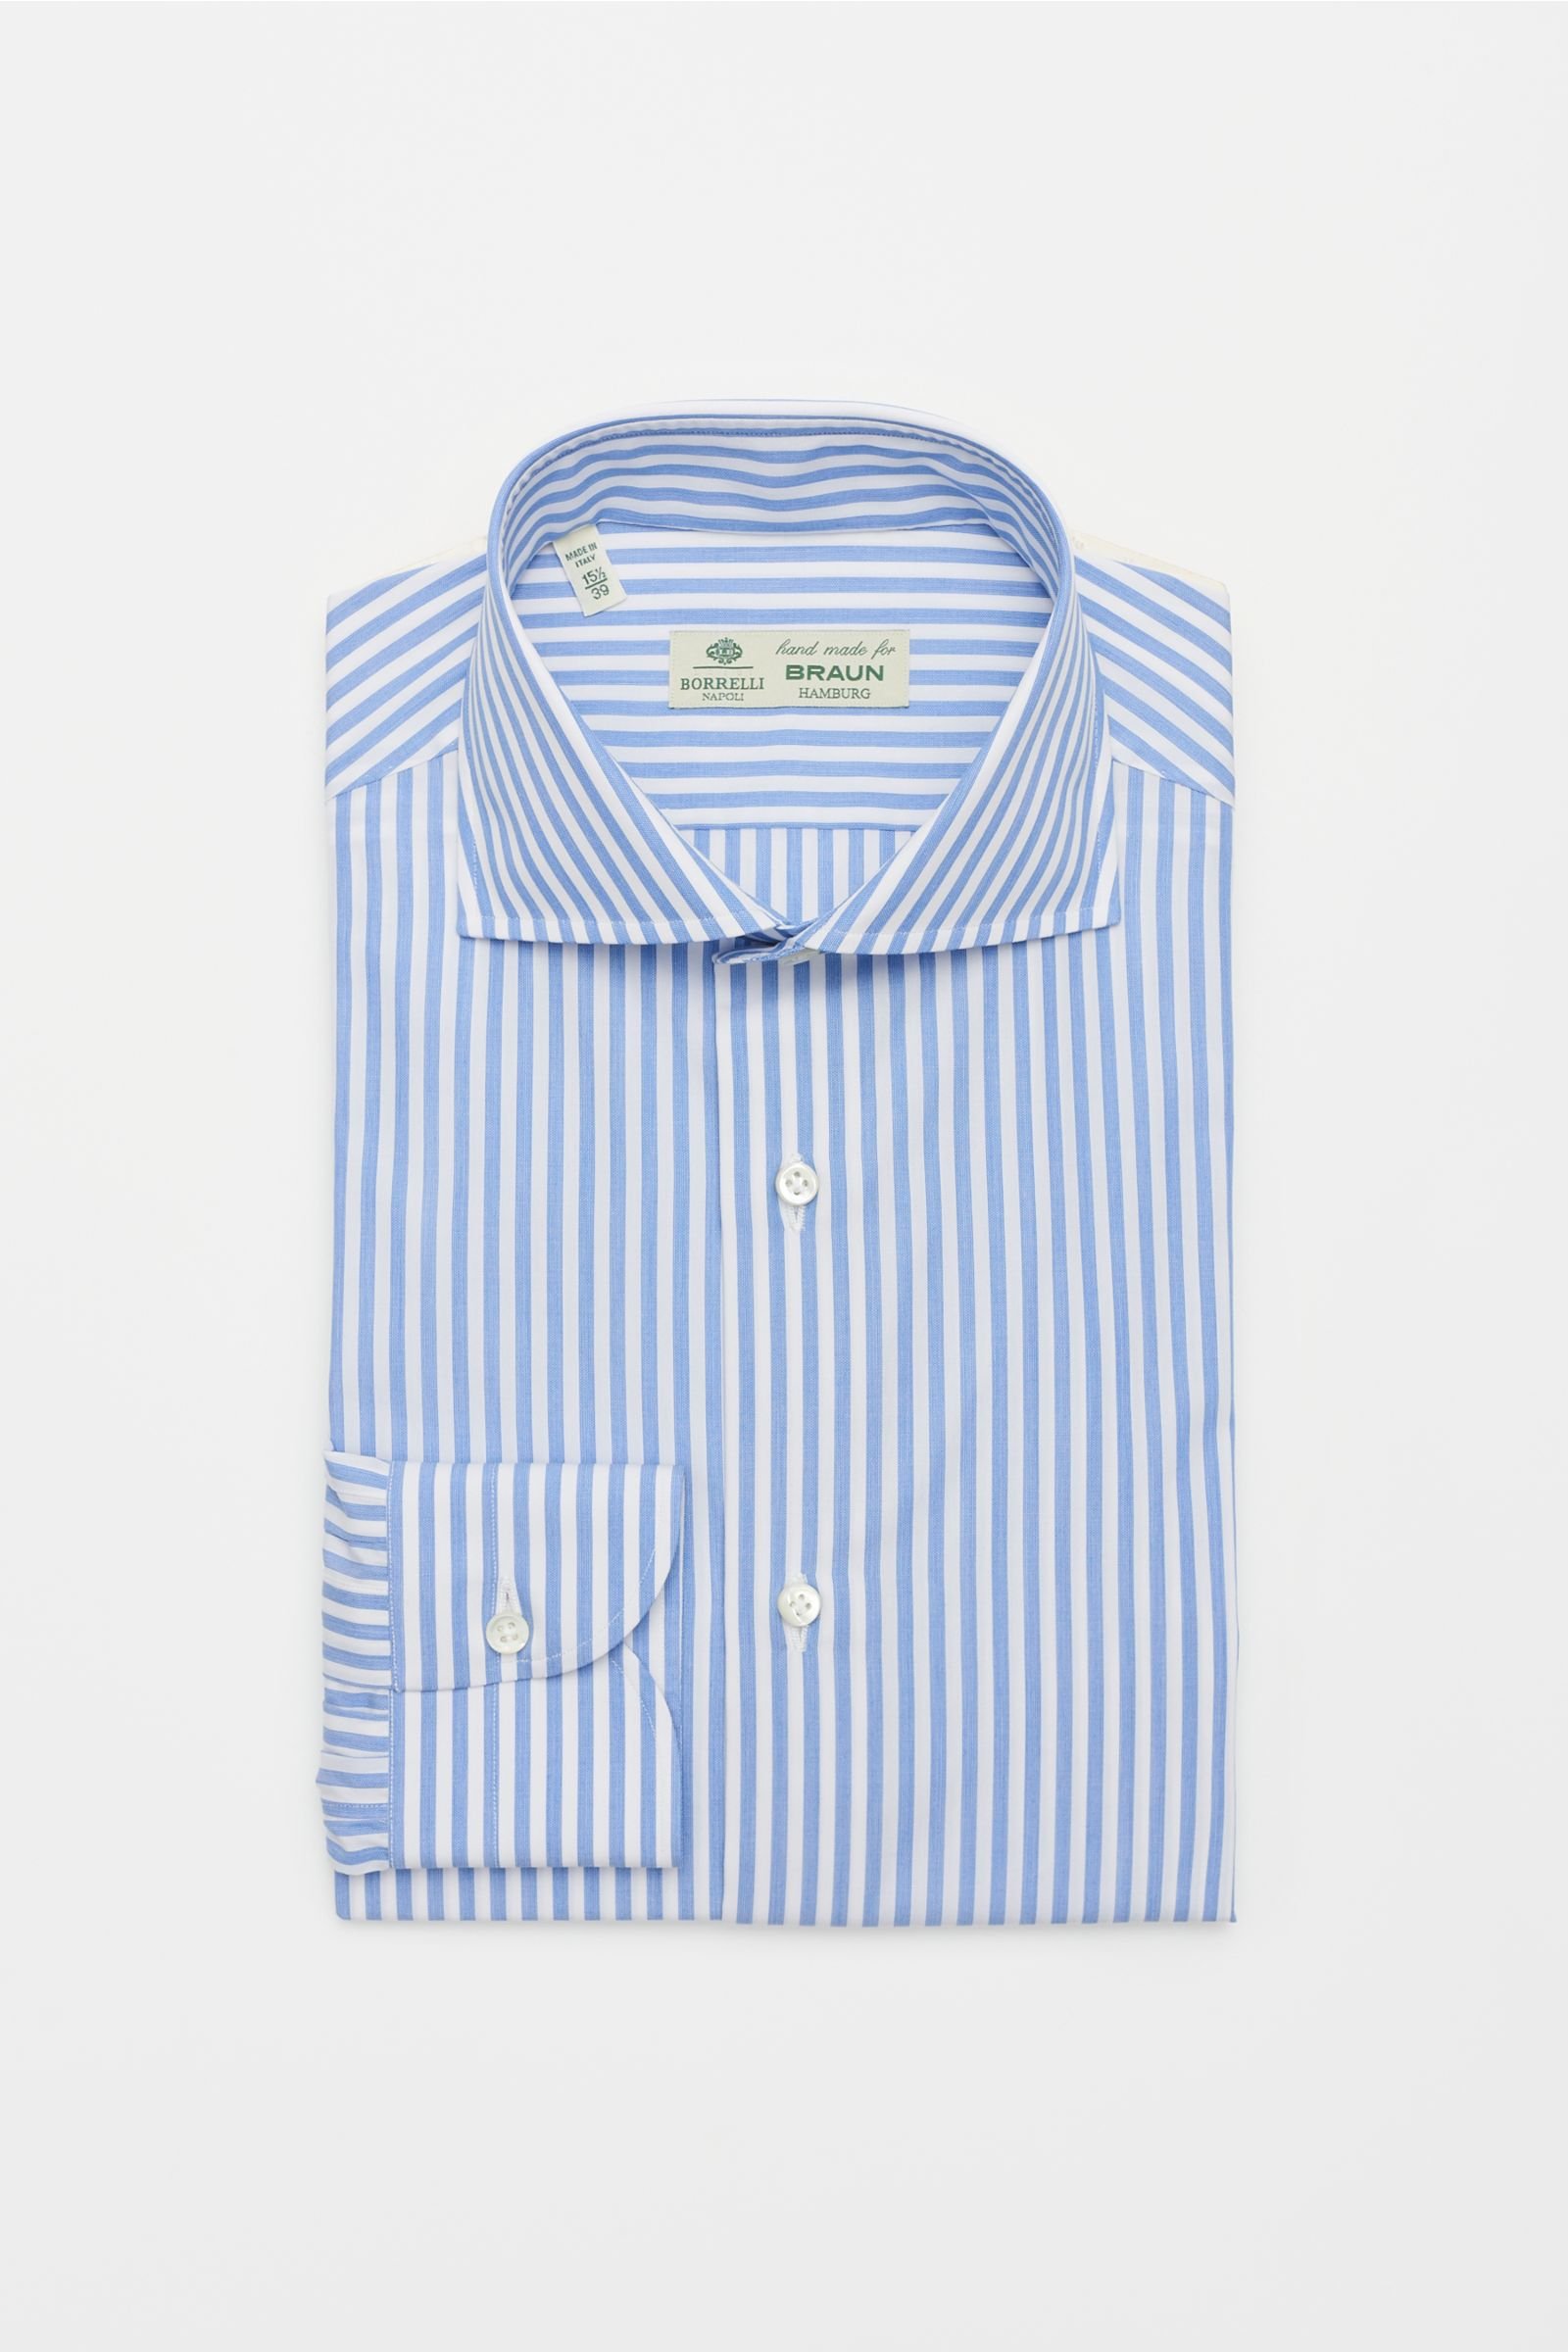 Business shirt 'Nando' shark collar smoky blue striped